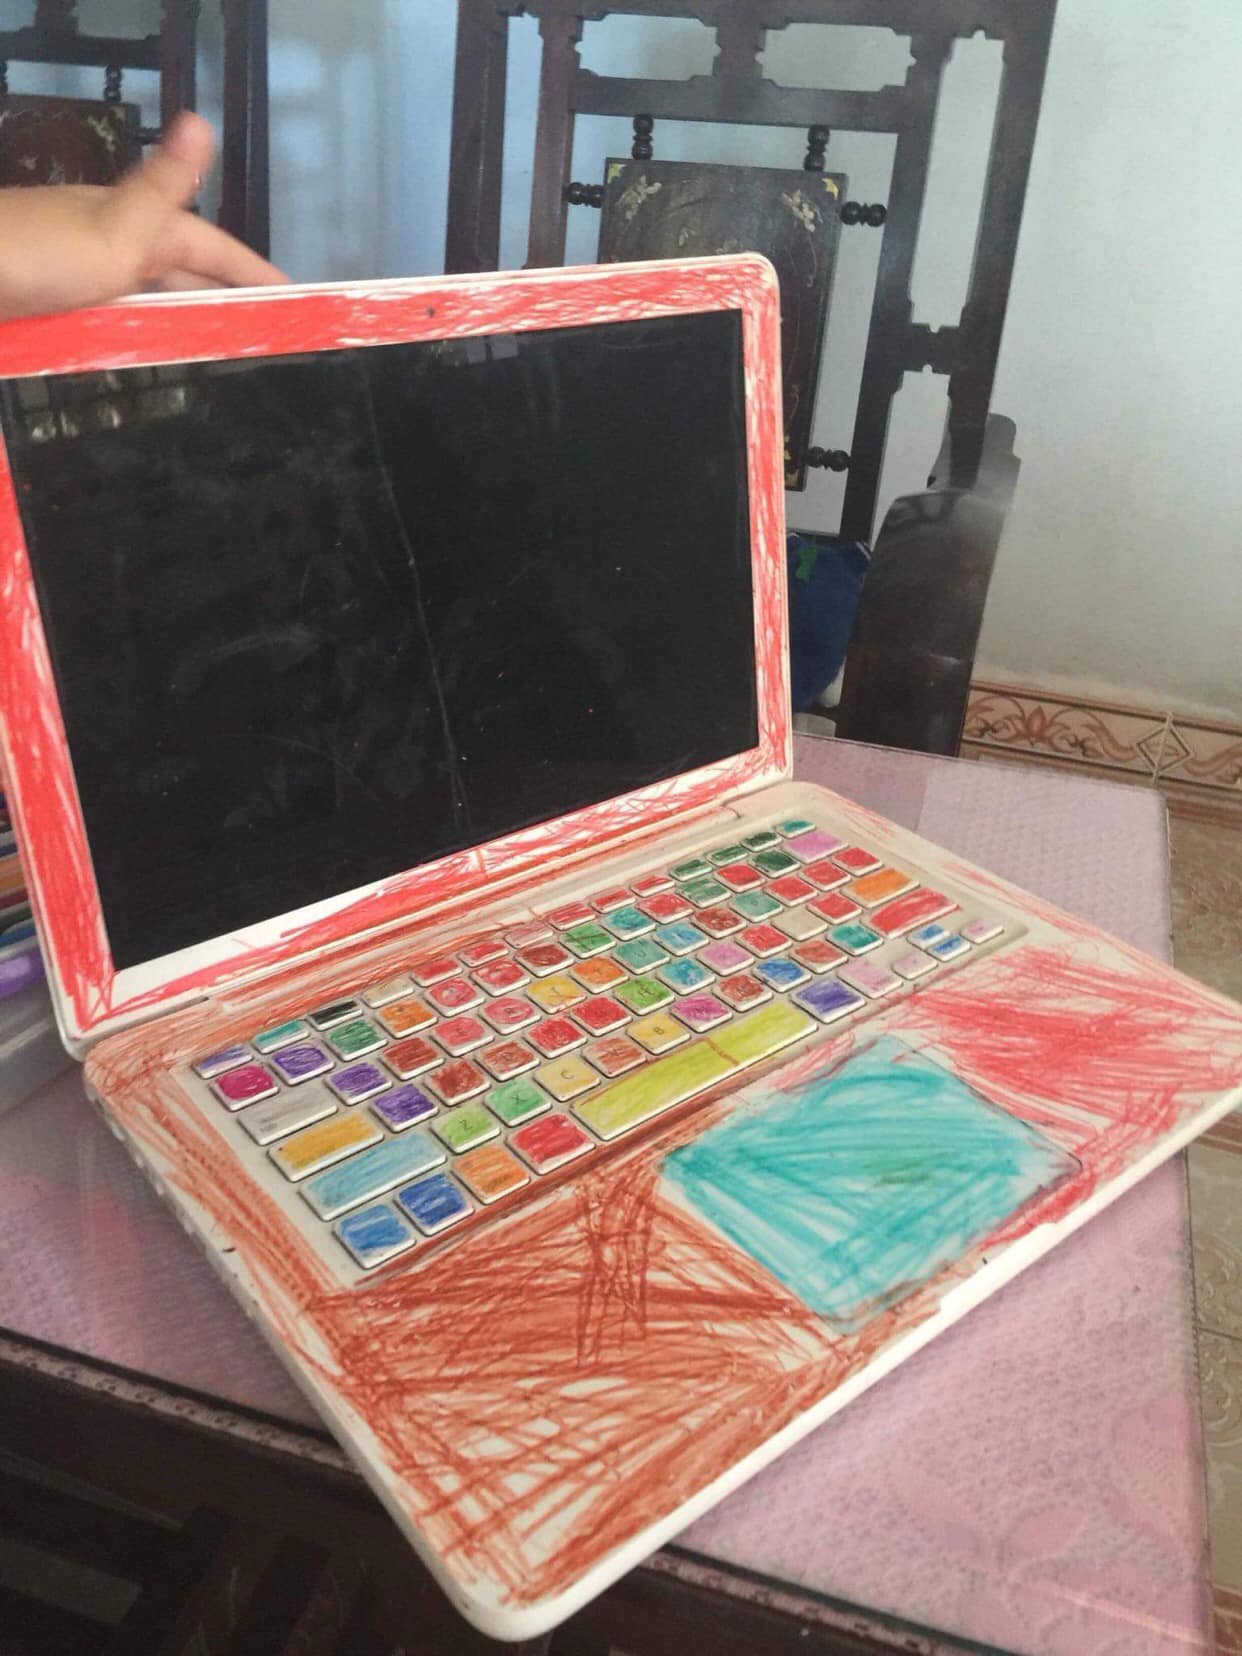 Cô gái nhận cái kết thảm thương khi cho cháu gái mượn laptop xem hoạt hình, phụ huynh tỉnh bơ: Trẻ con mà, biết gì đâu! - Ảnh 1.